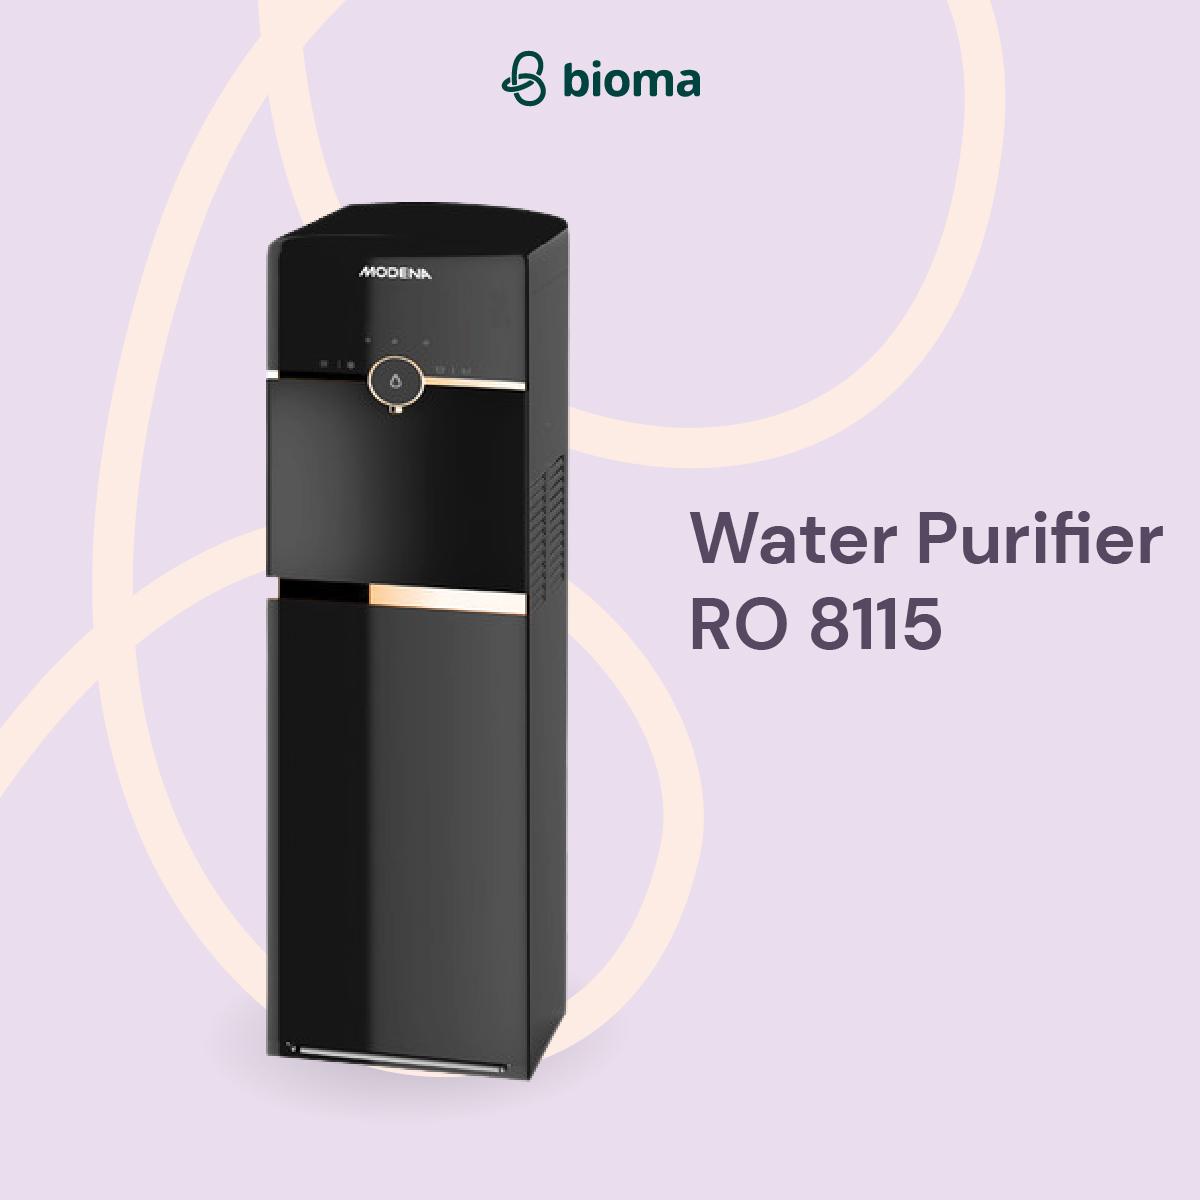 Water Purifier RO 8115